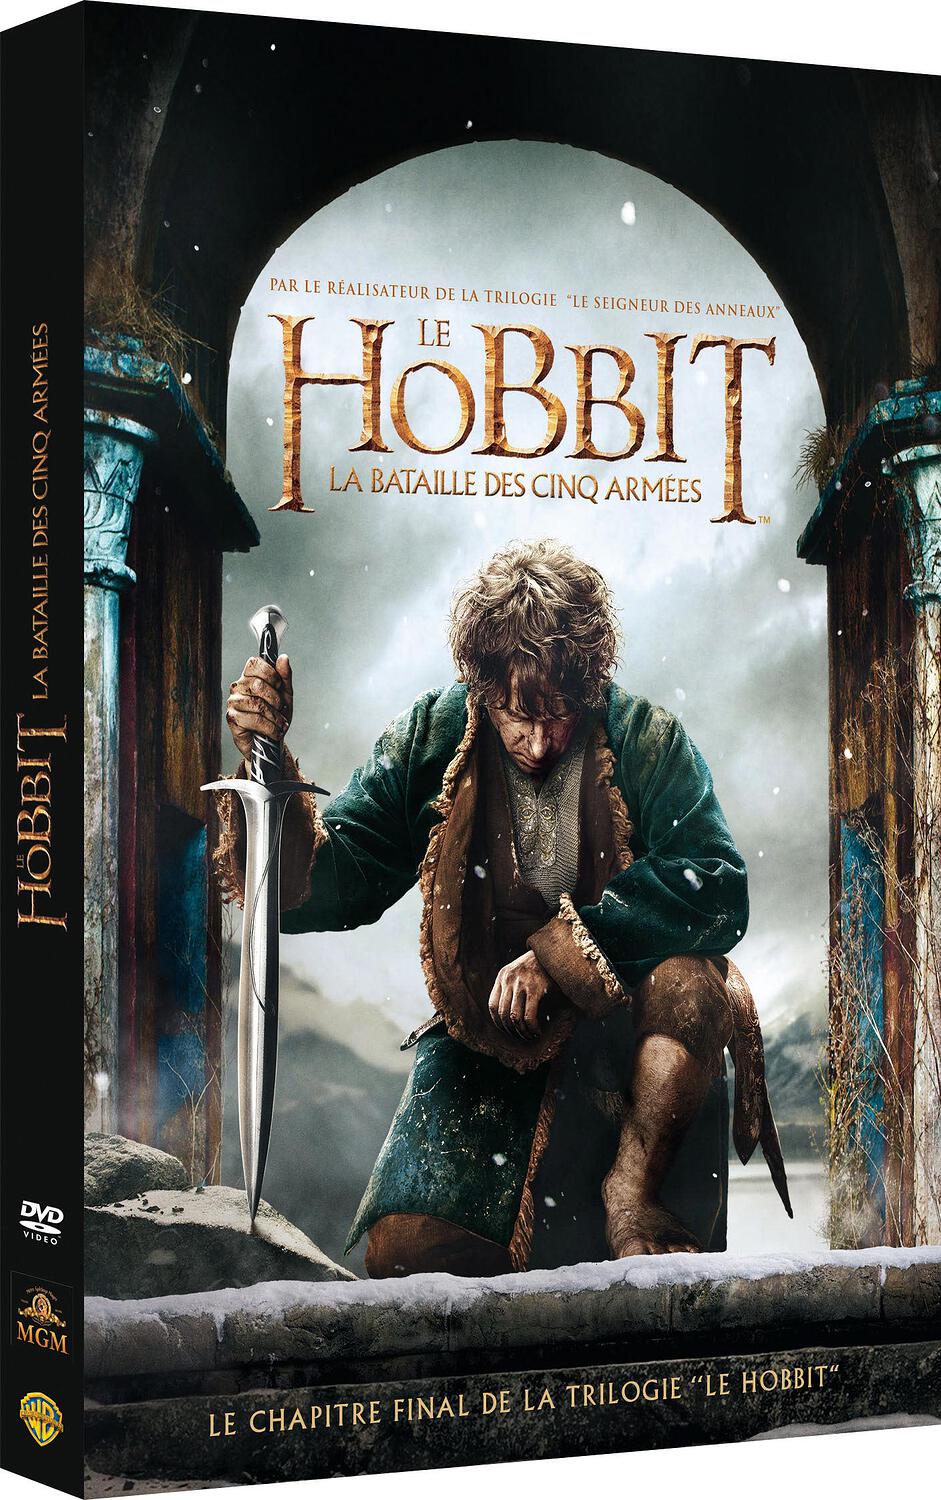 Couverture de : Le Hobbit v.3, La bataille des cinq armées